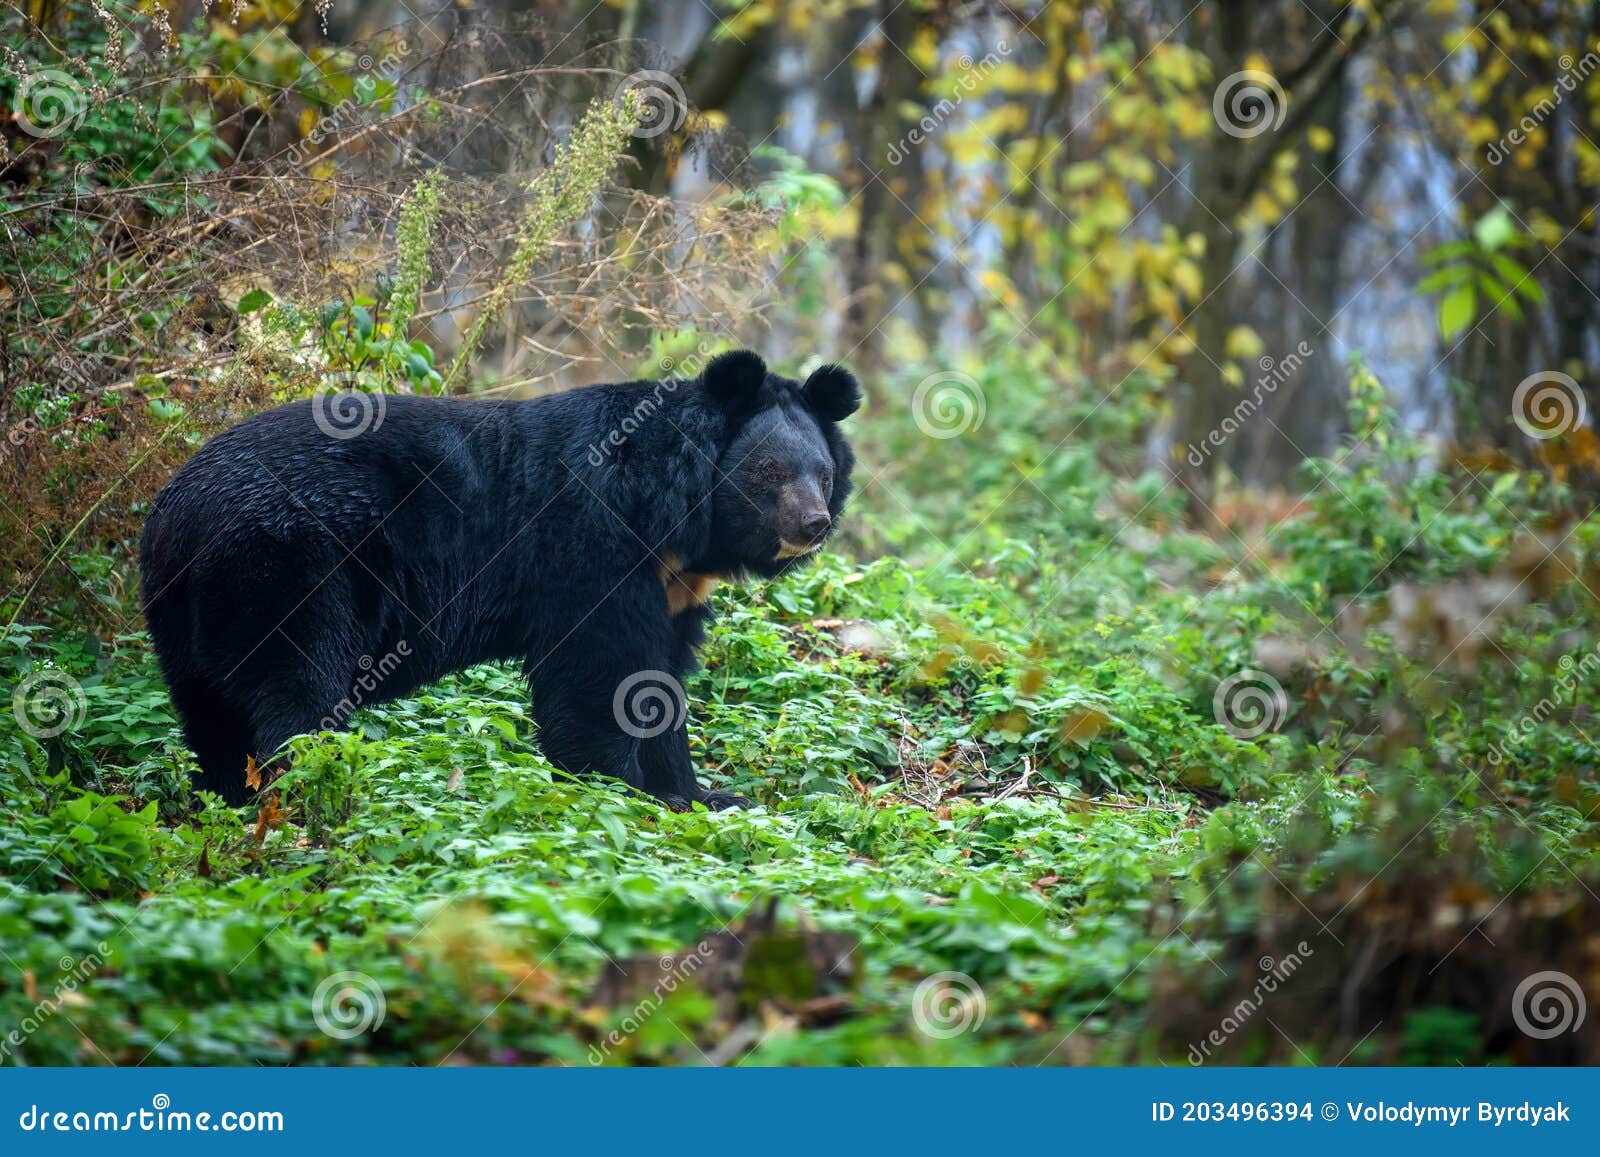 asiatic black bear ursus thibetanus in the autumn forest